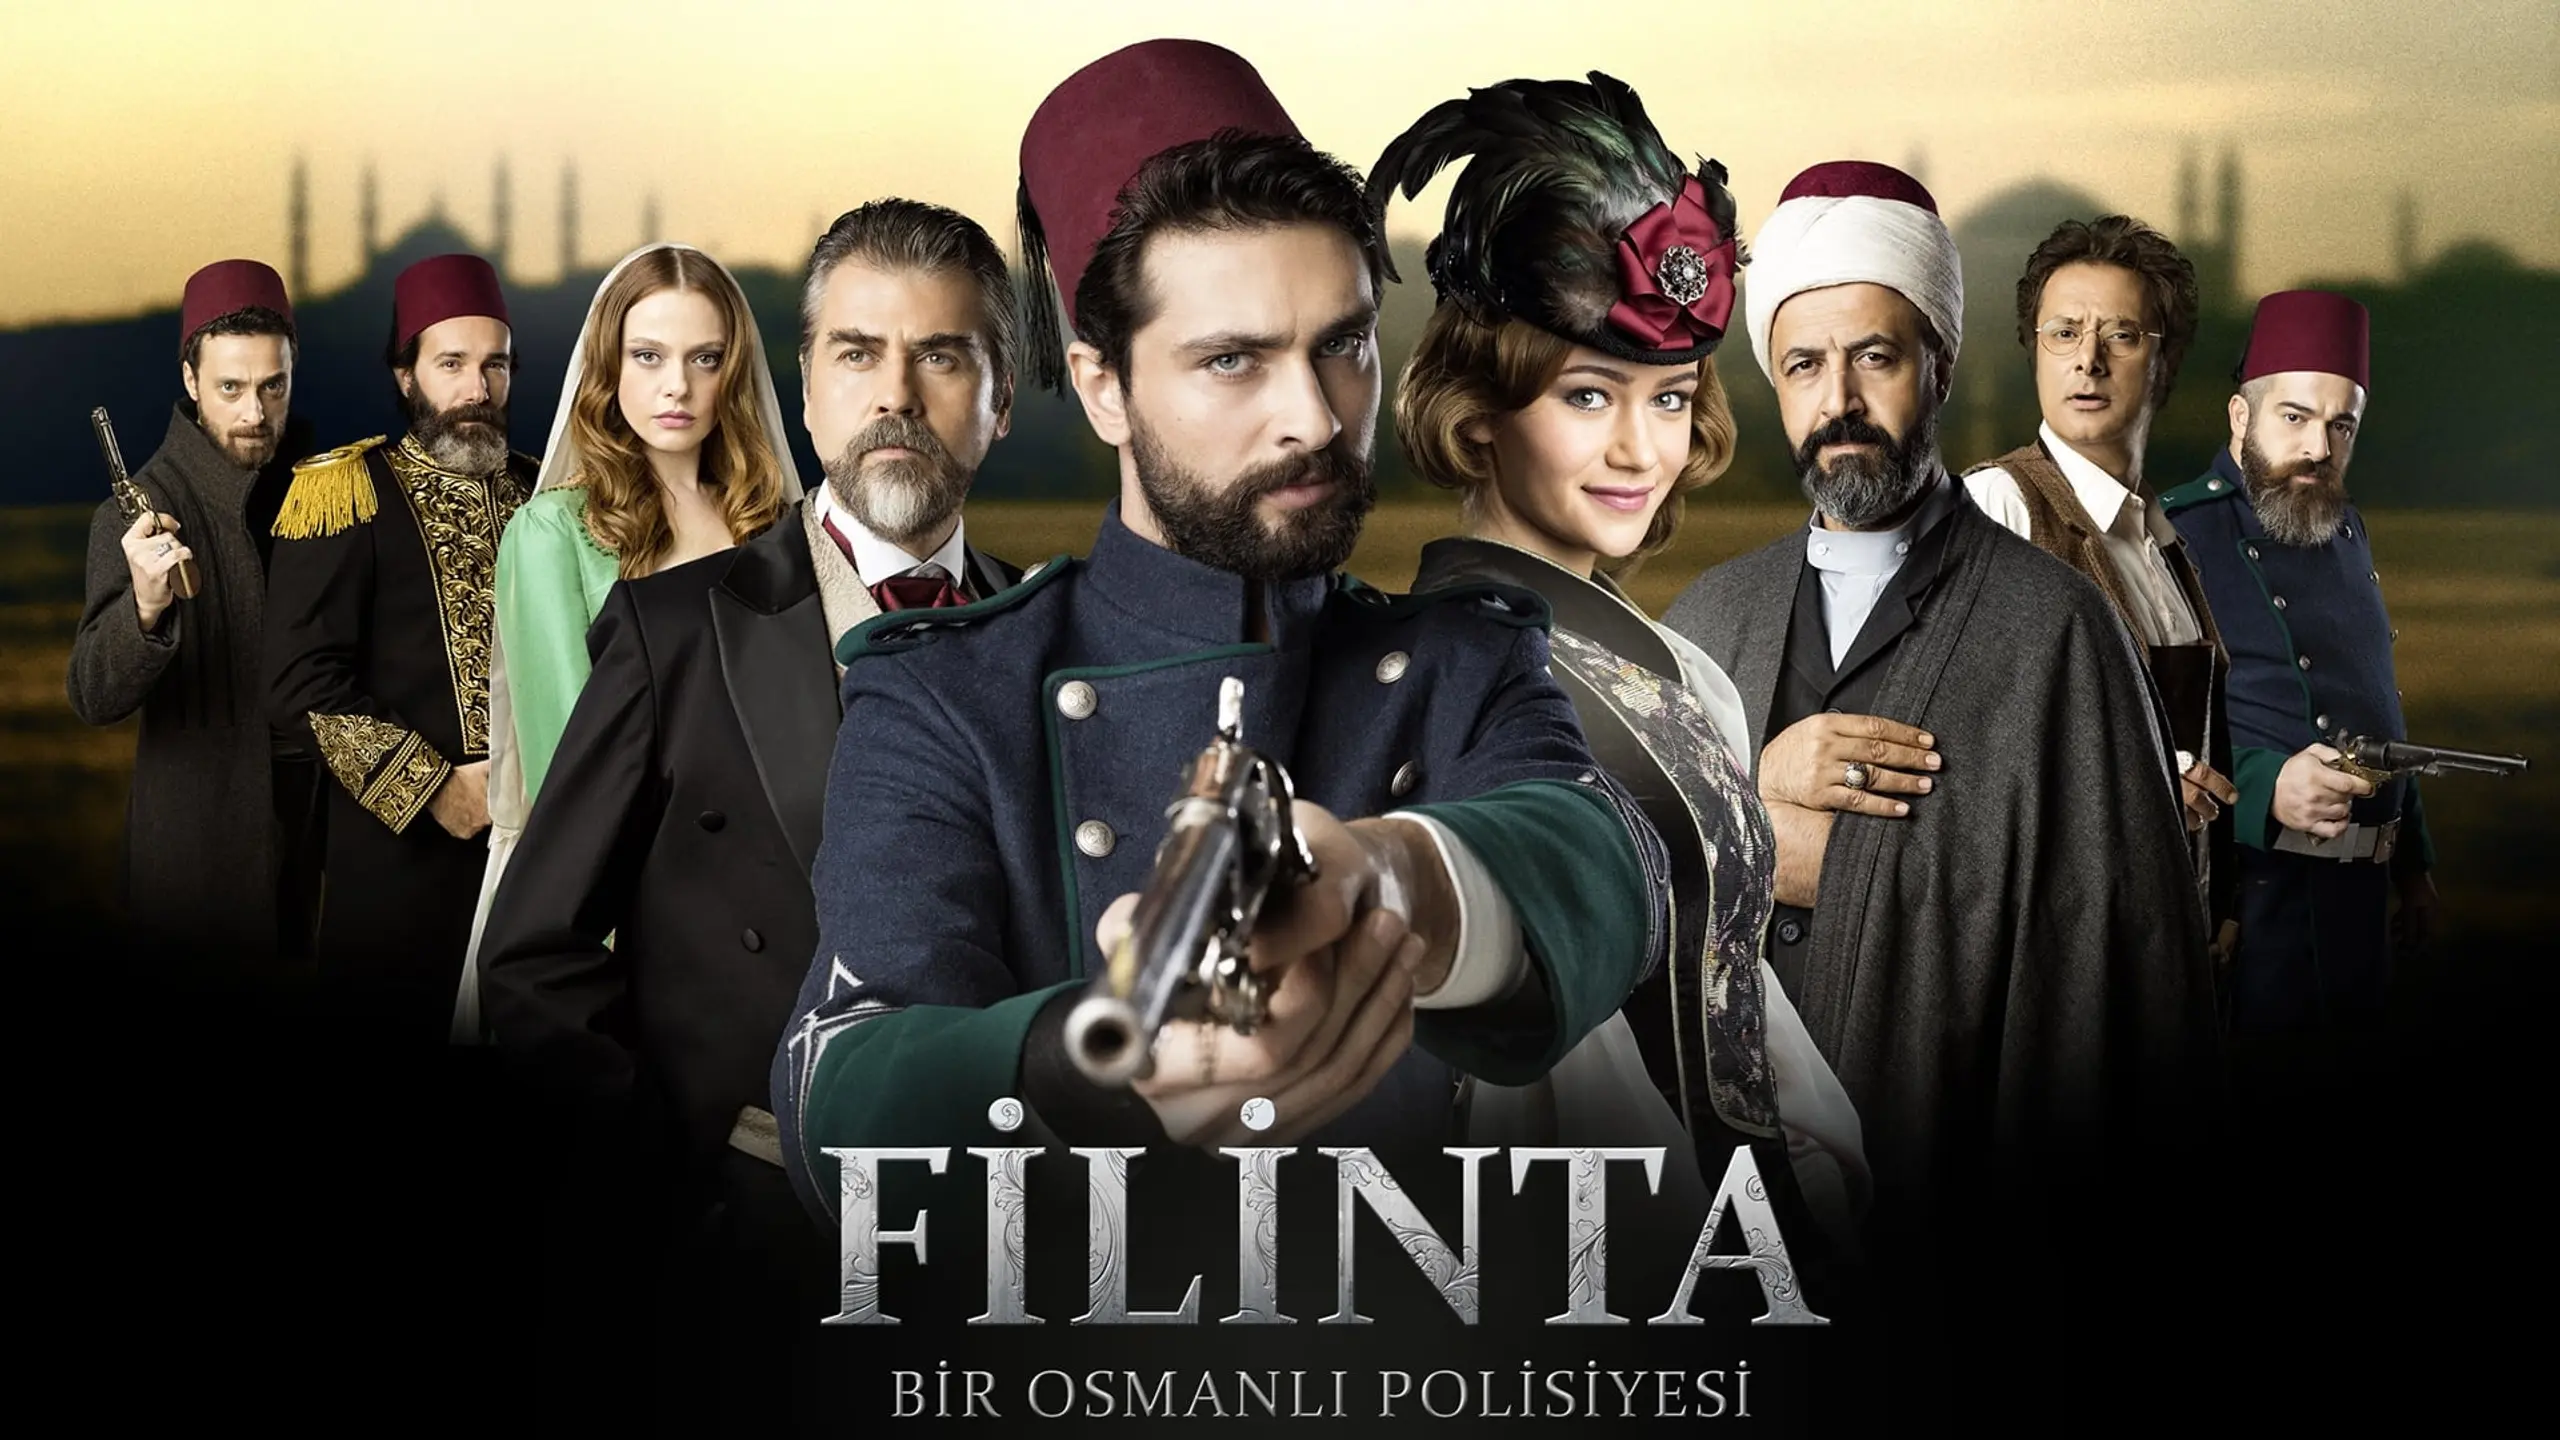 Filinta: Bir Osmanlı Polisiyesi